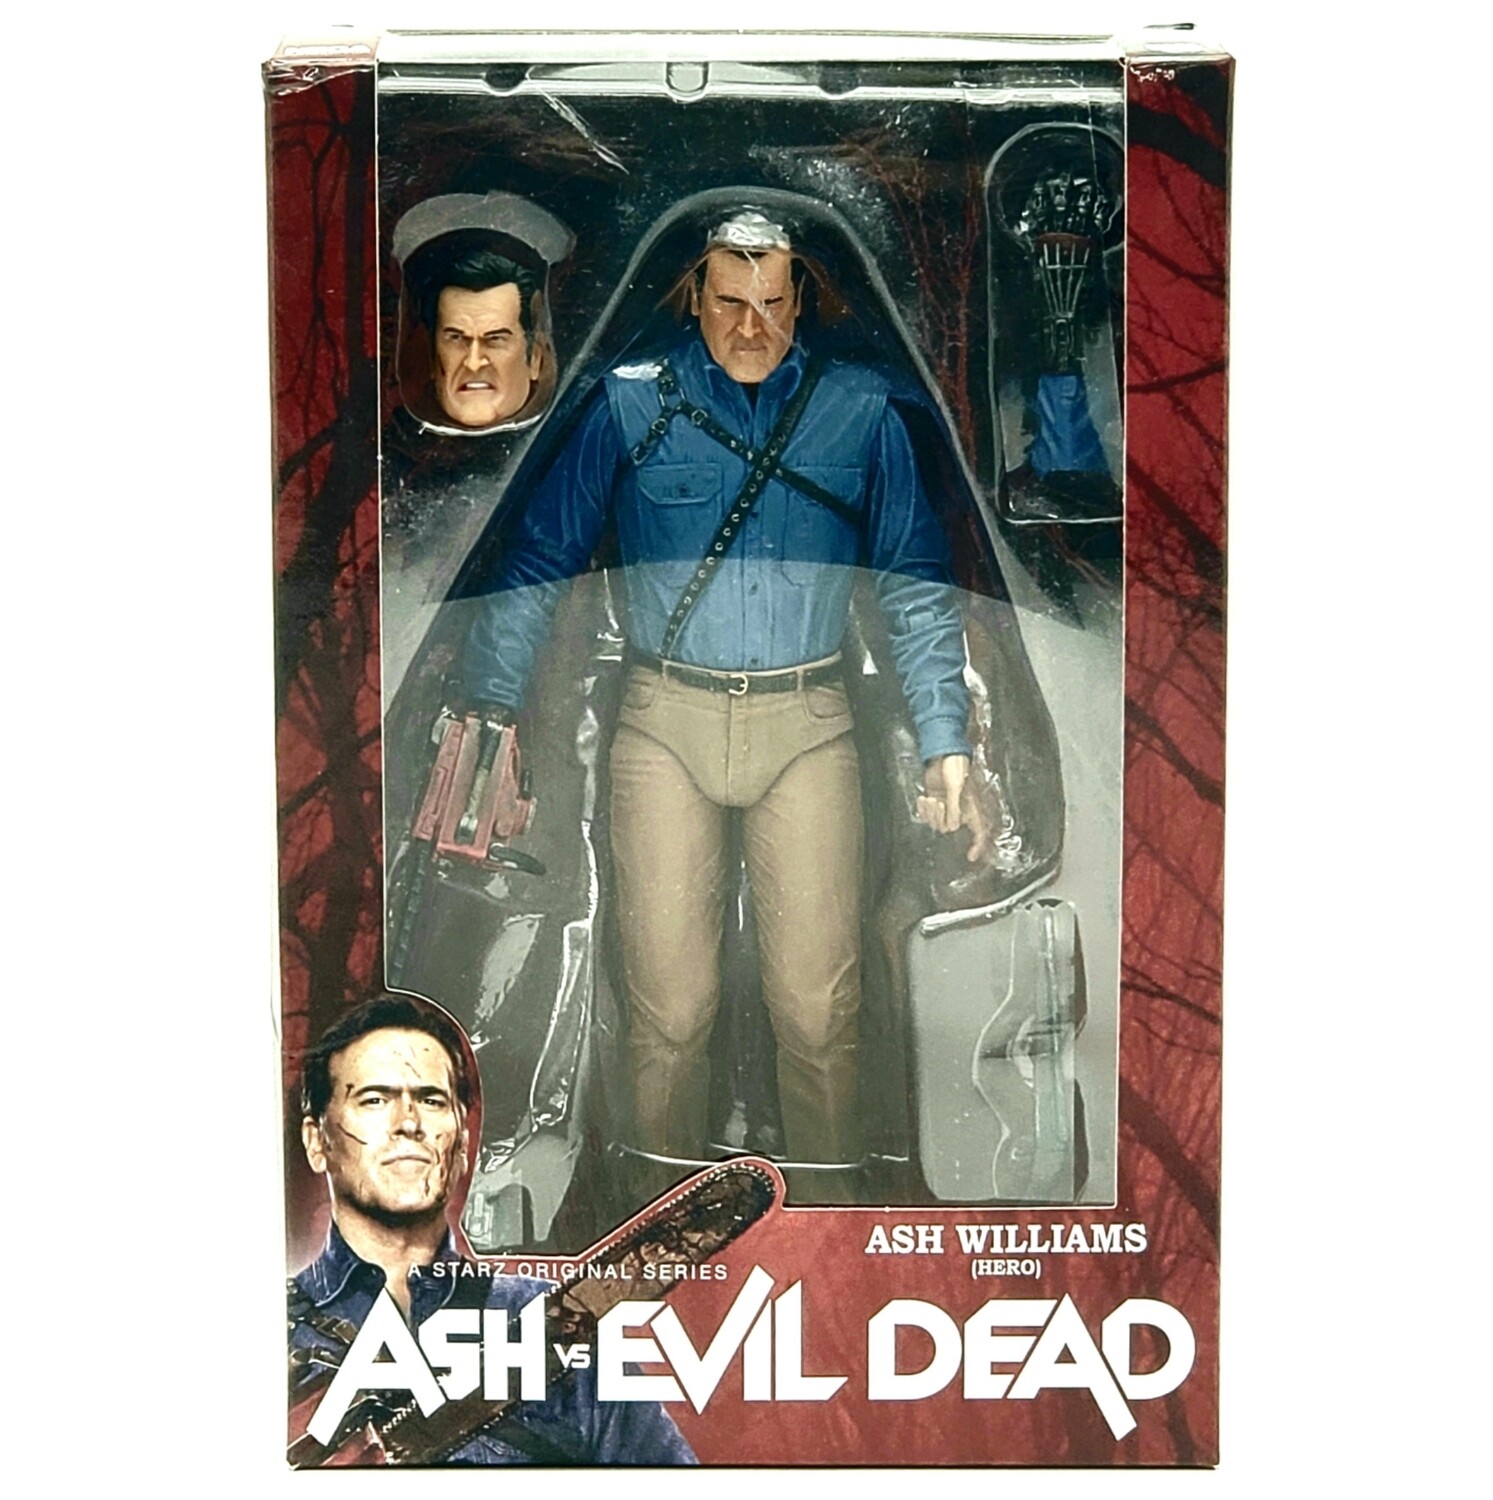 NECA Ash vs. Evil Dead Ash Williams (Hero) 7